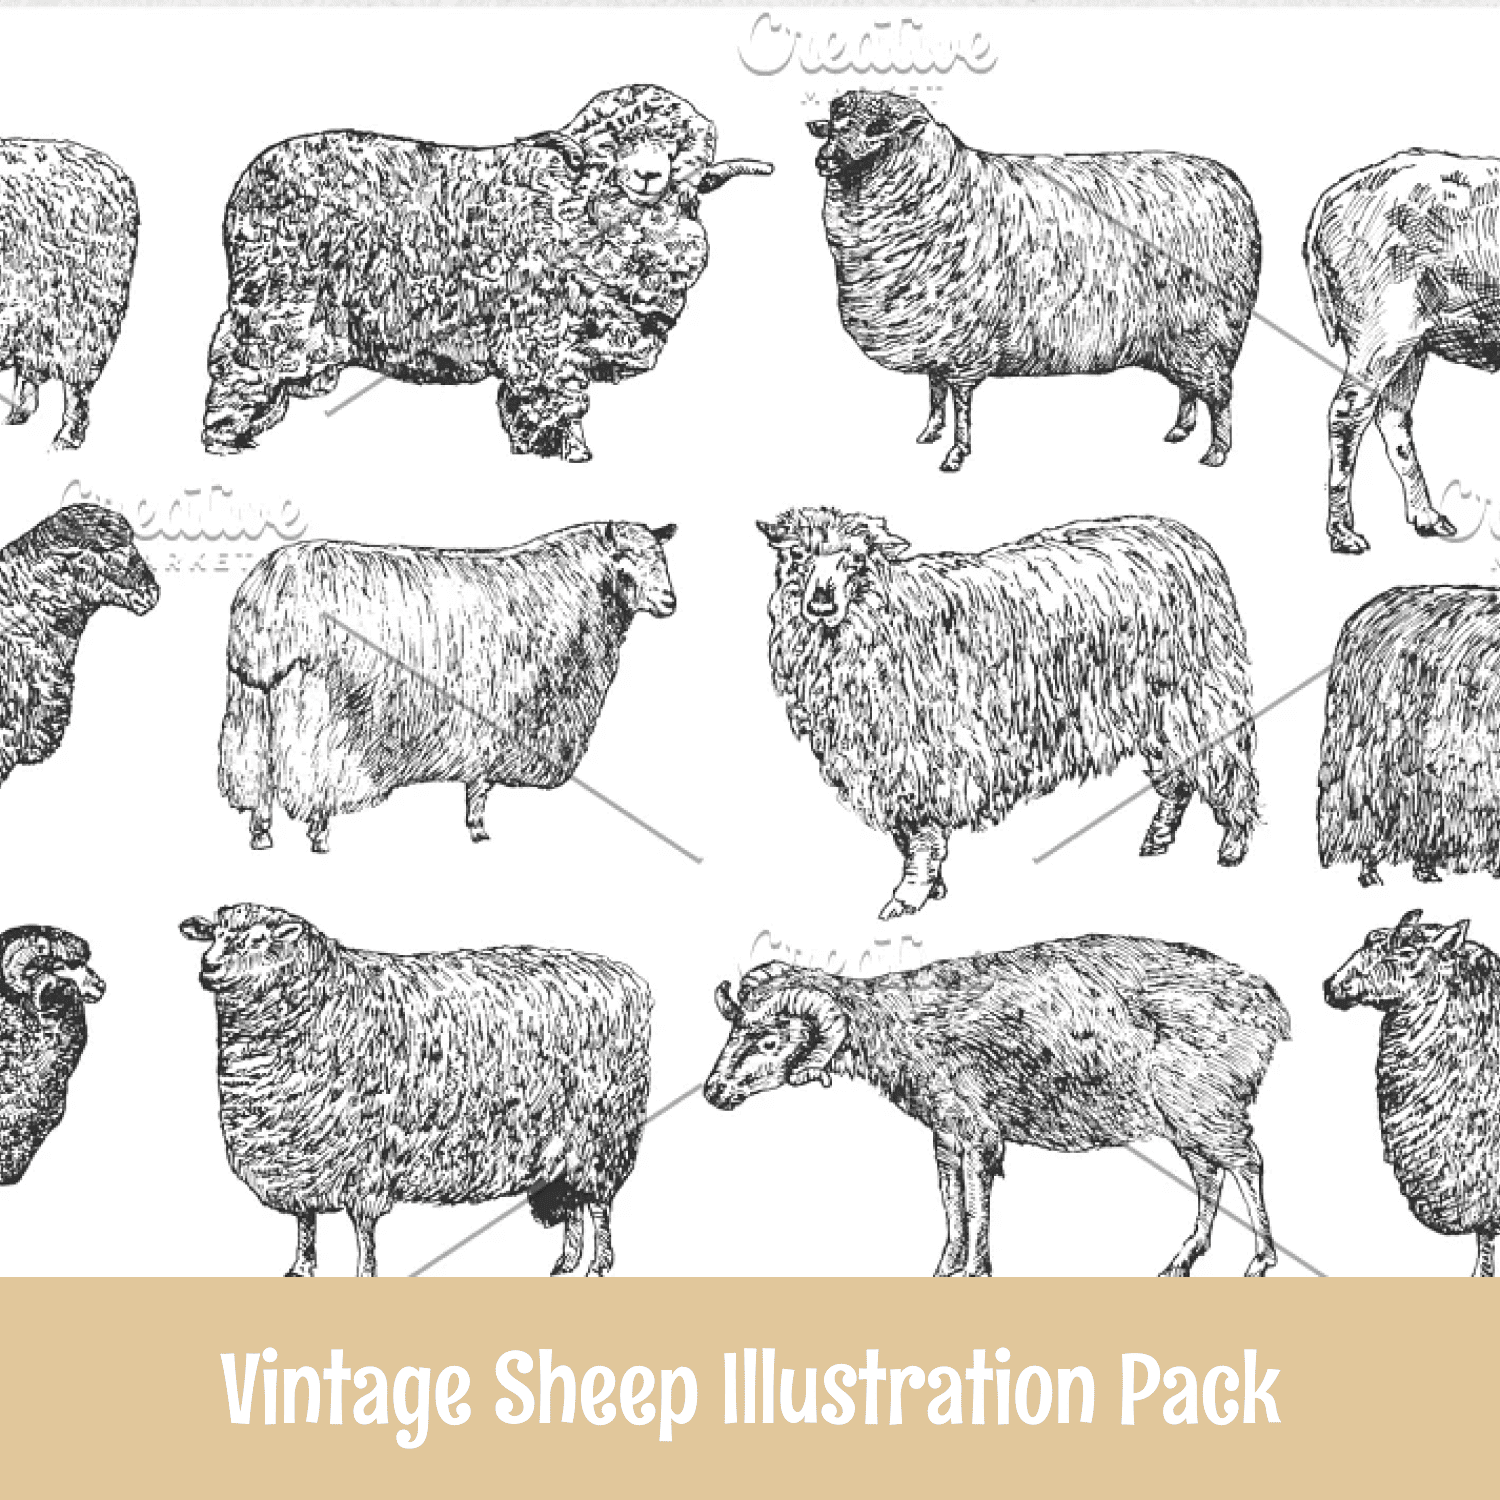 Save Vintage Sheep Illustration Pack.